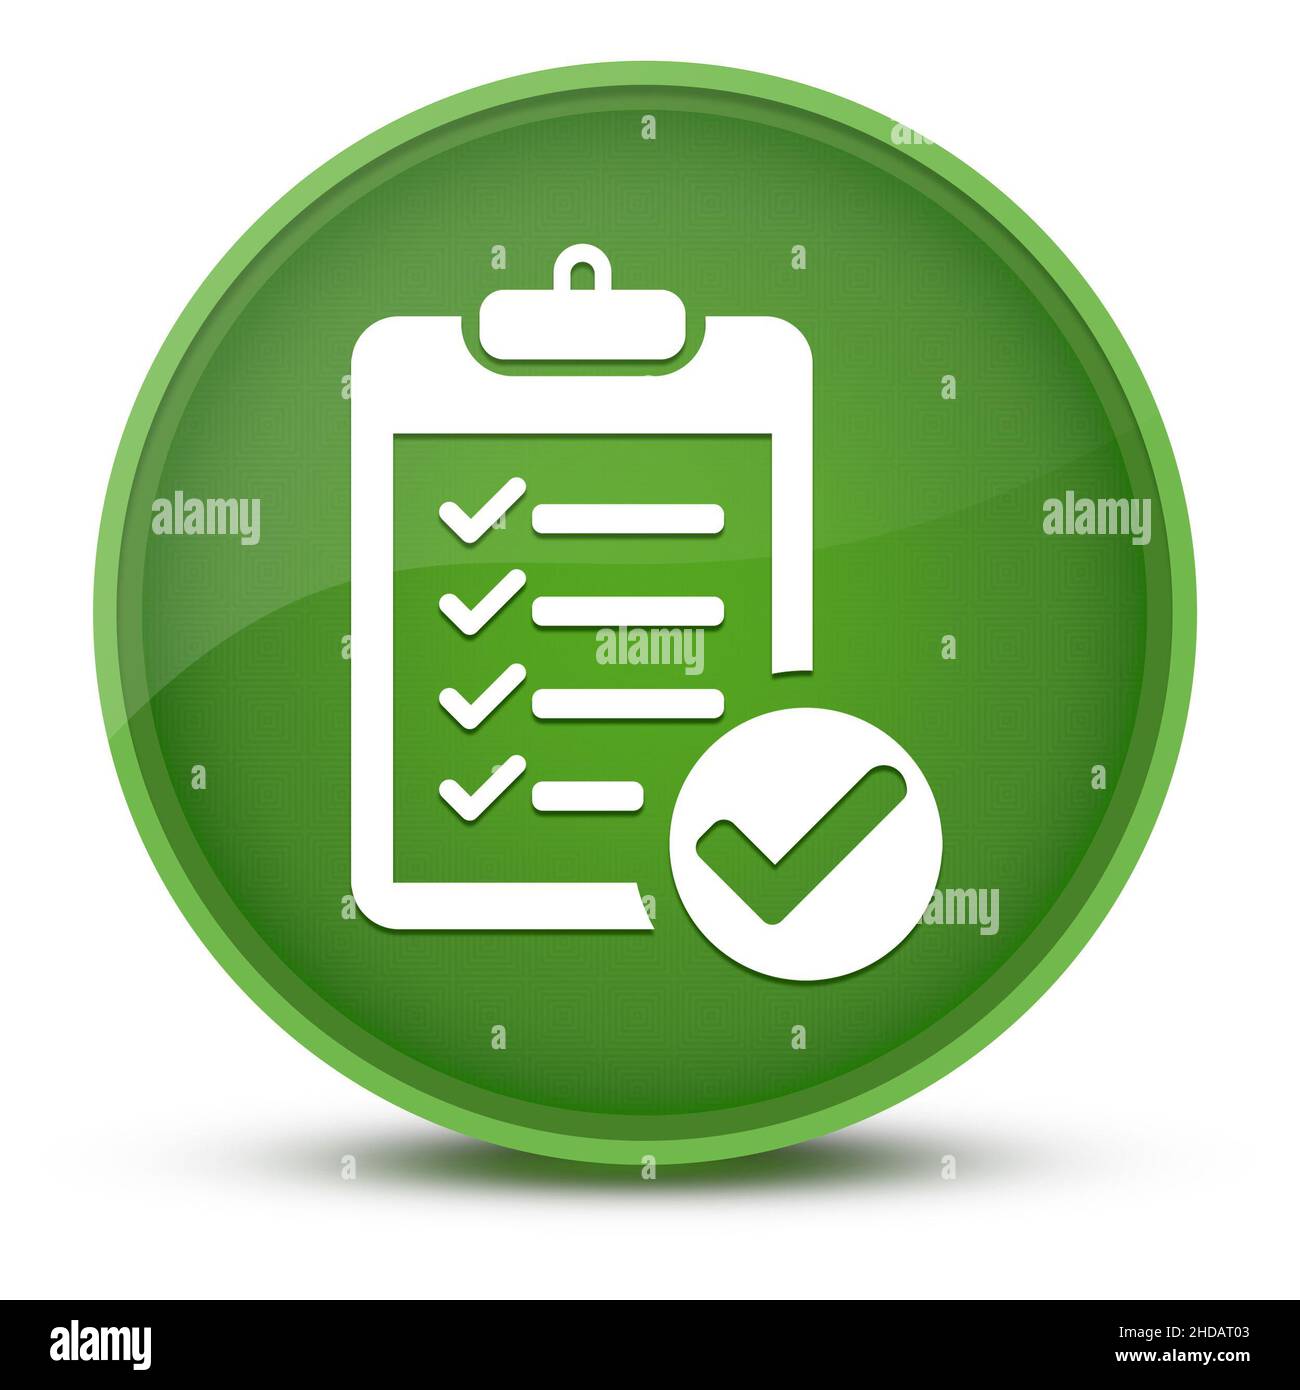 Elenco di controllo lussuoso pulsante rotondo verde lucido illustrazione astratta Foto Stock